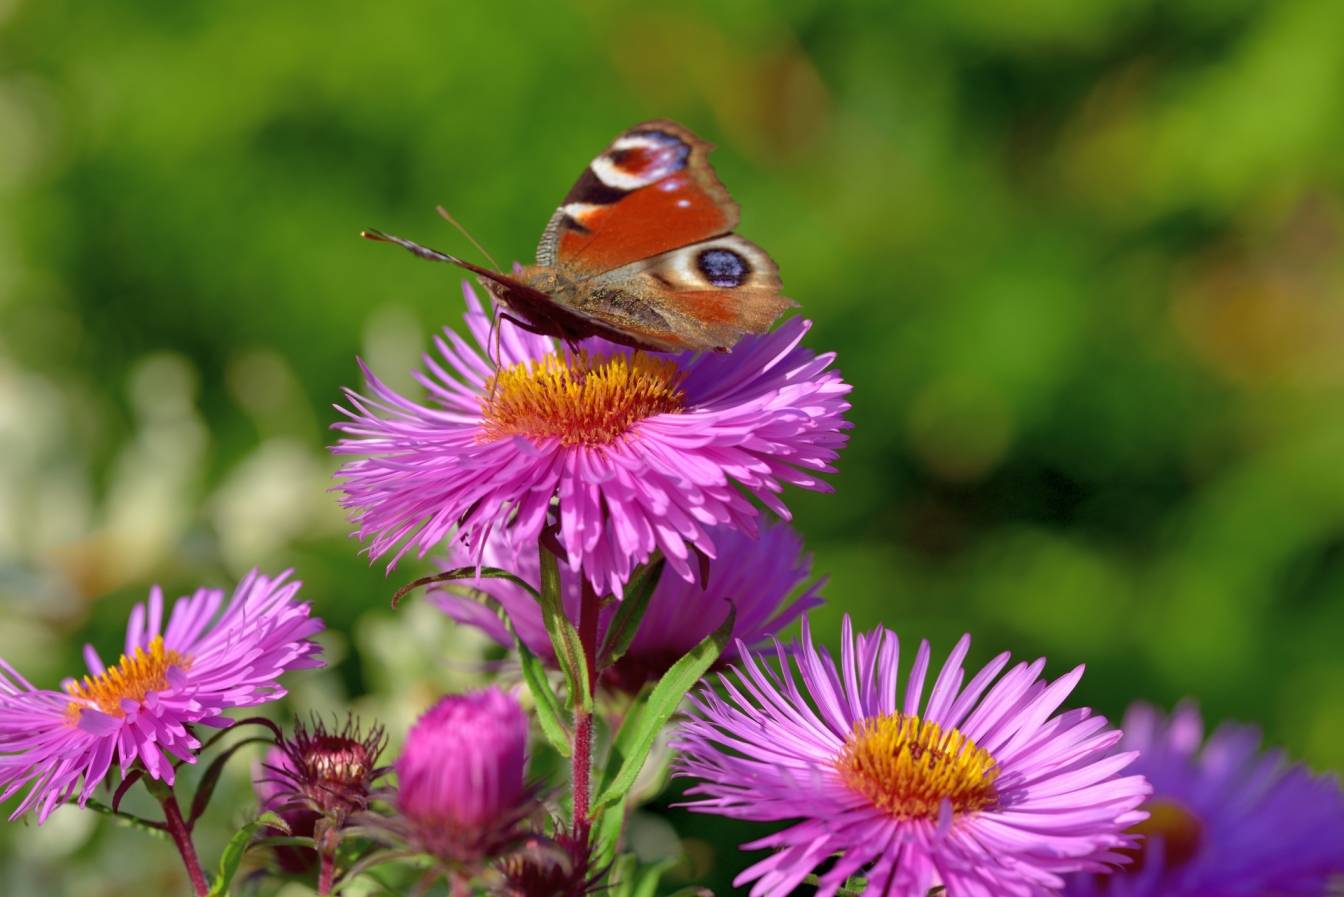 Motyl siedzi na różowych kwiatkach astrów. Jak uprawiać astry (marcinki) w ogrodzie?